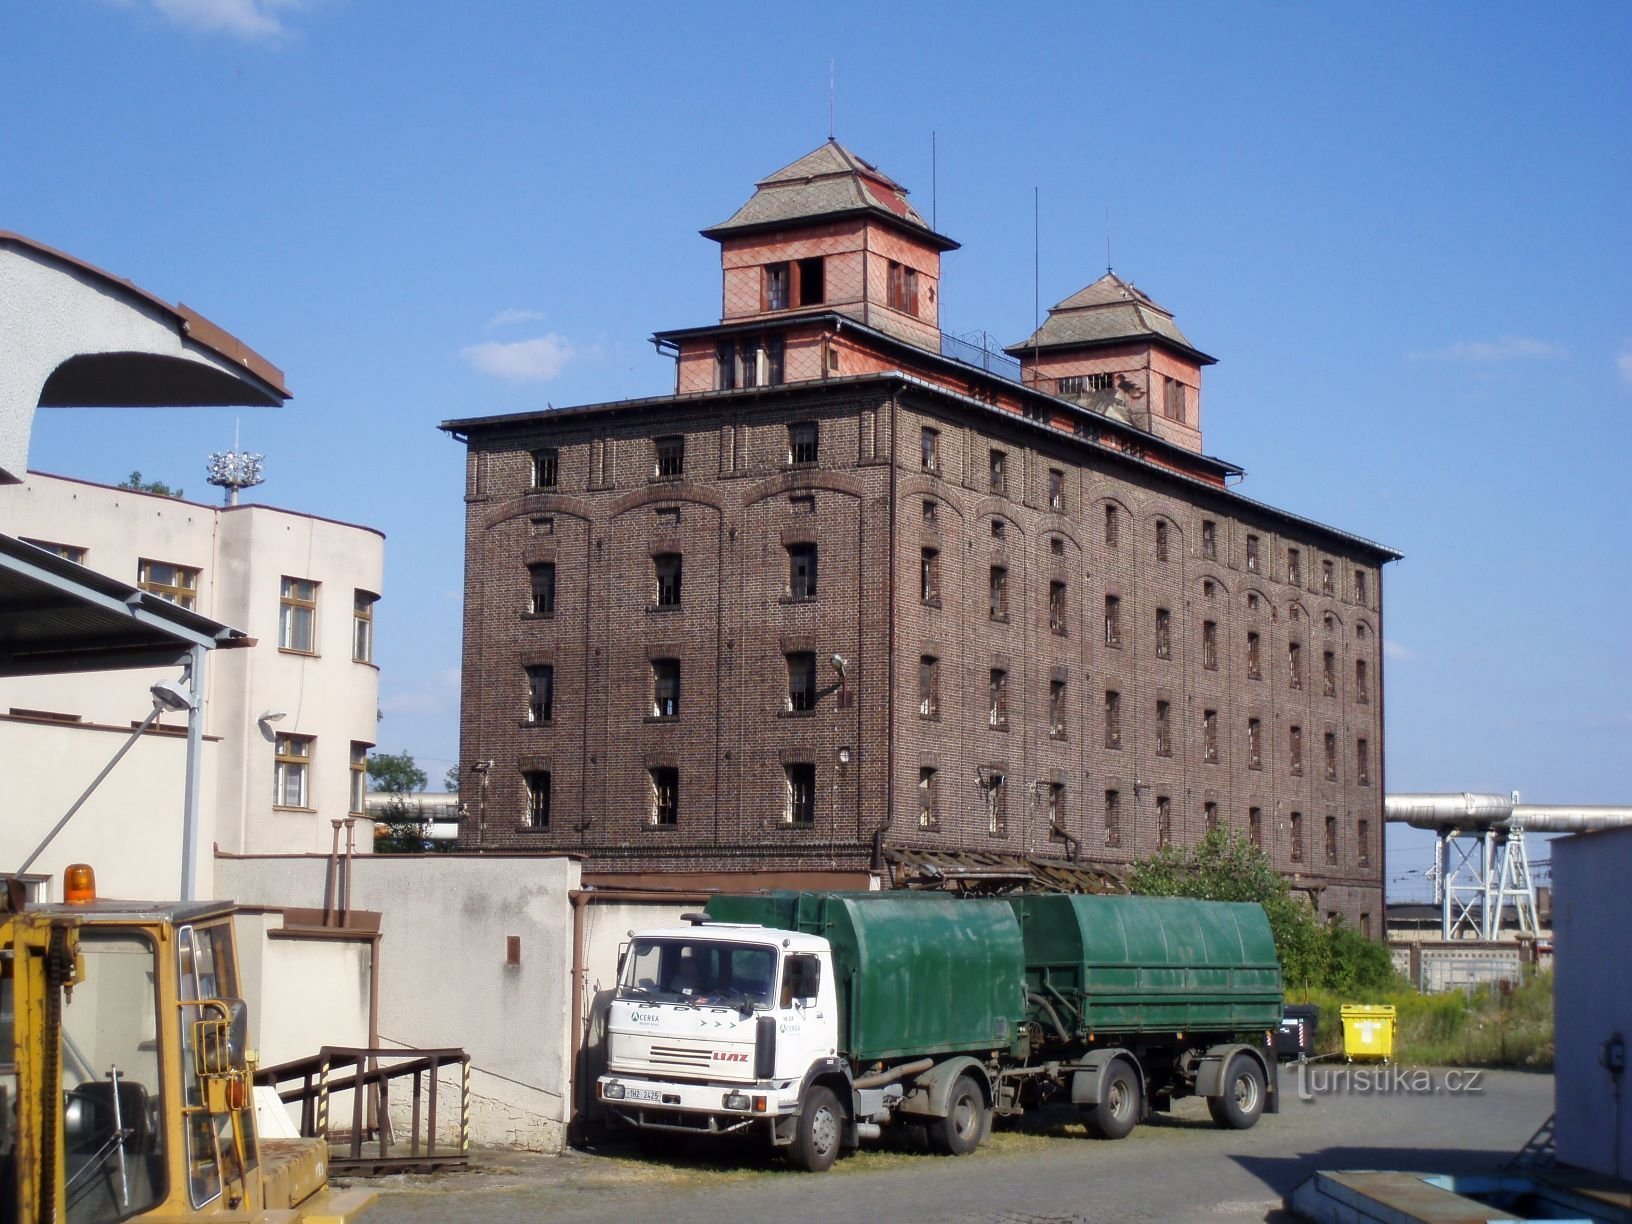 Первоначальный зерновой склад Кооператива фермерских складов для районов Градца Кралове.